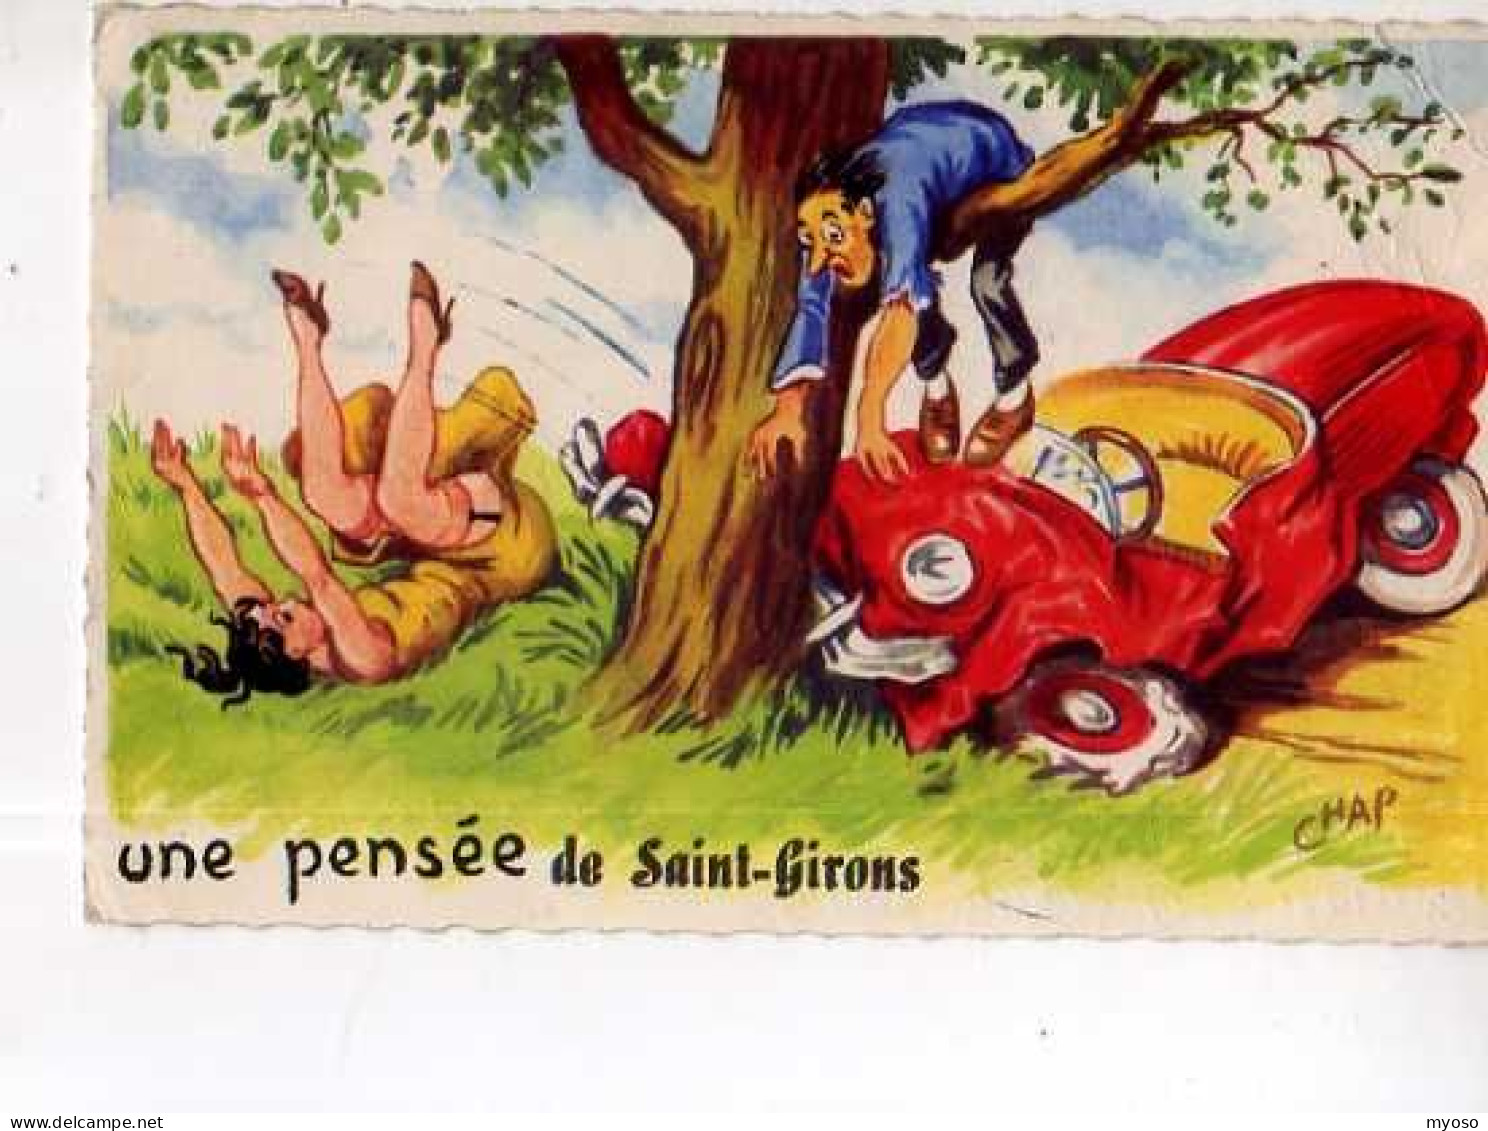 09 Une Pensee De ST GIRONS, Illustrateur Chap, Automobile Accidentee - Saint Girons